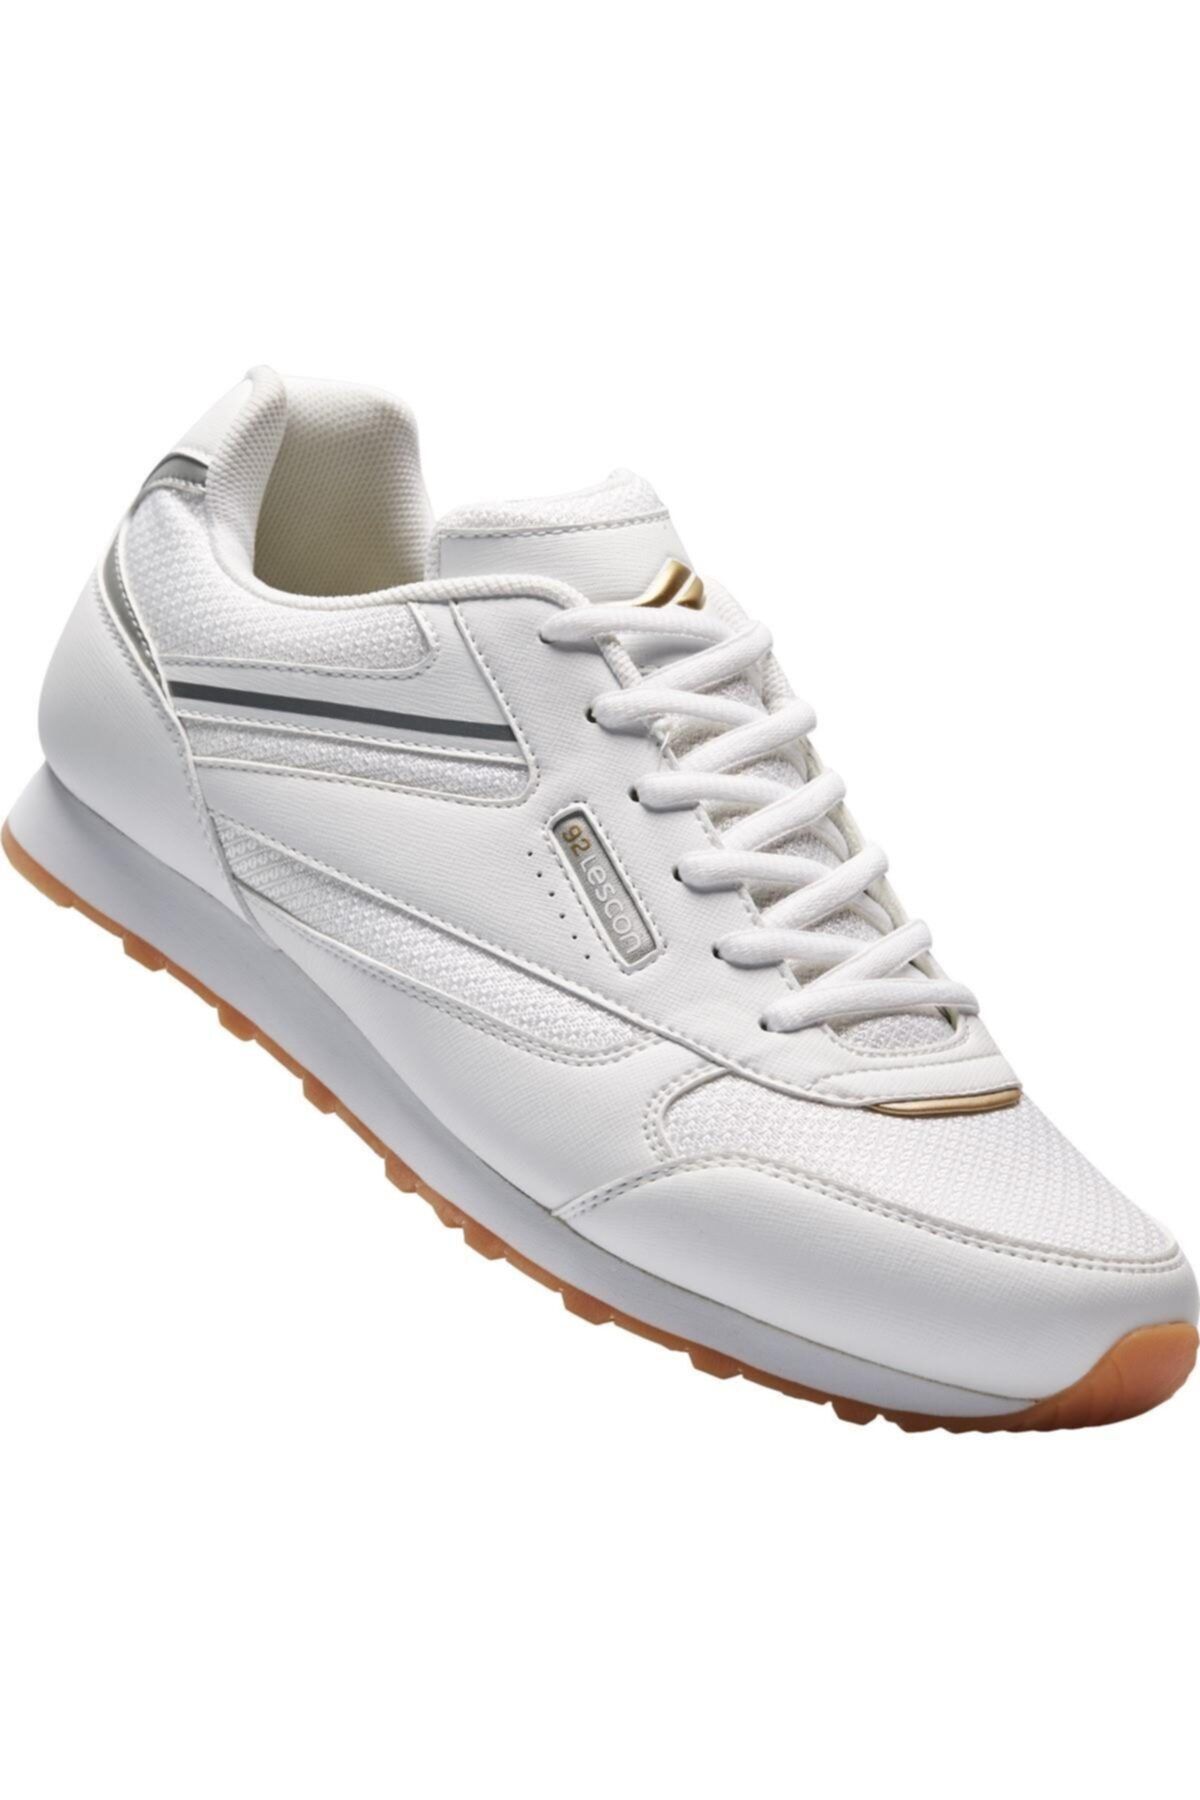 Lescon Beyaz - L-6528 Erkek Sneaker Ayakkabı